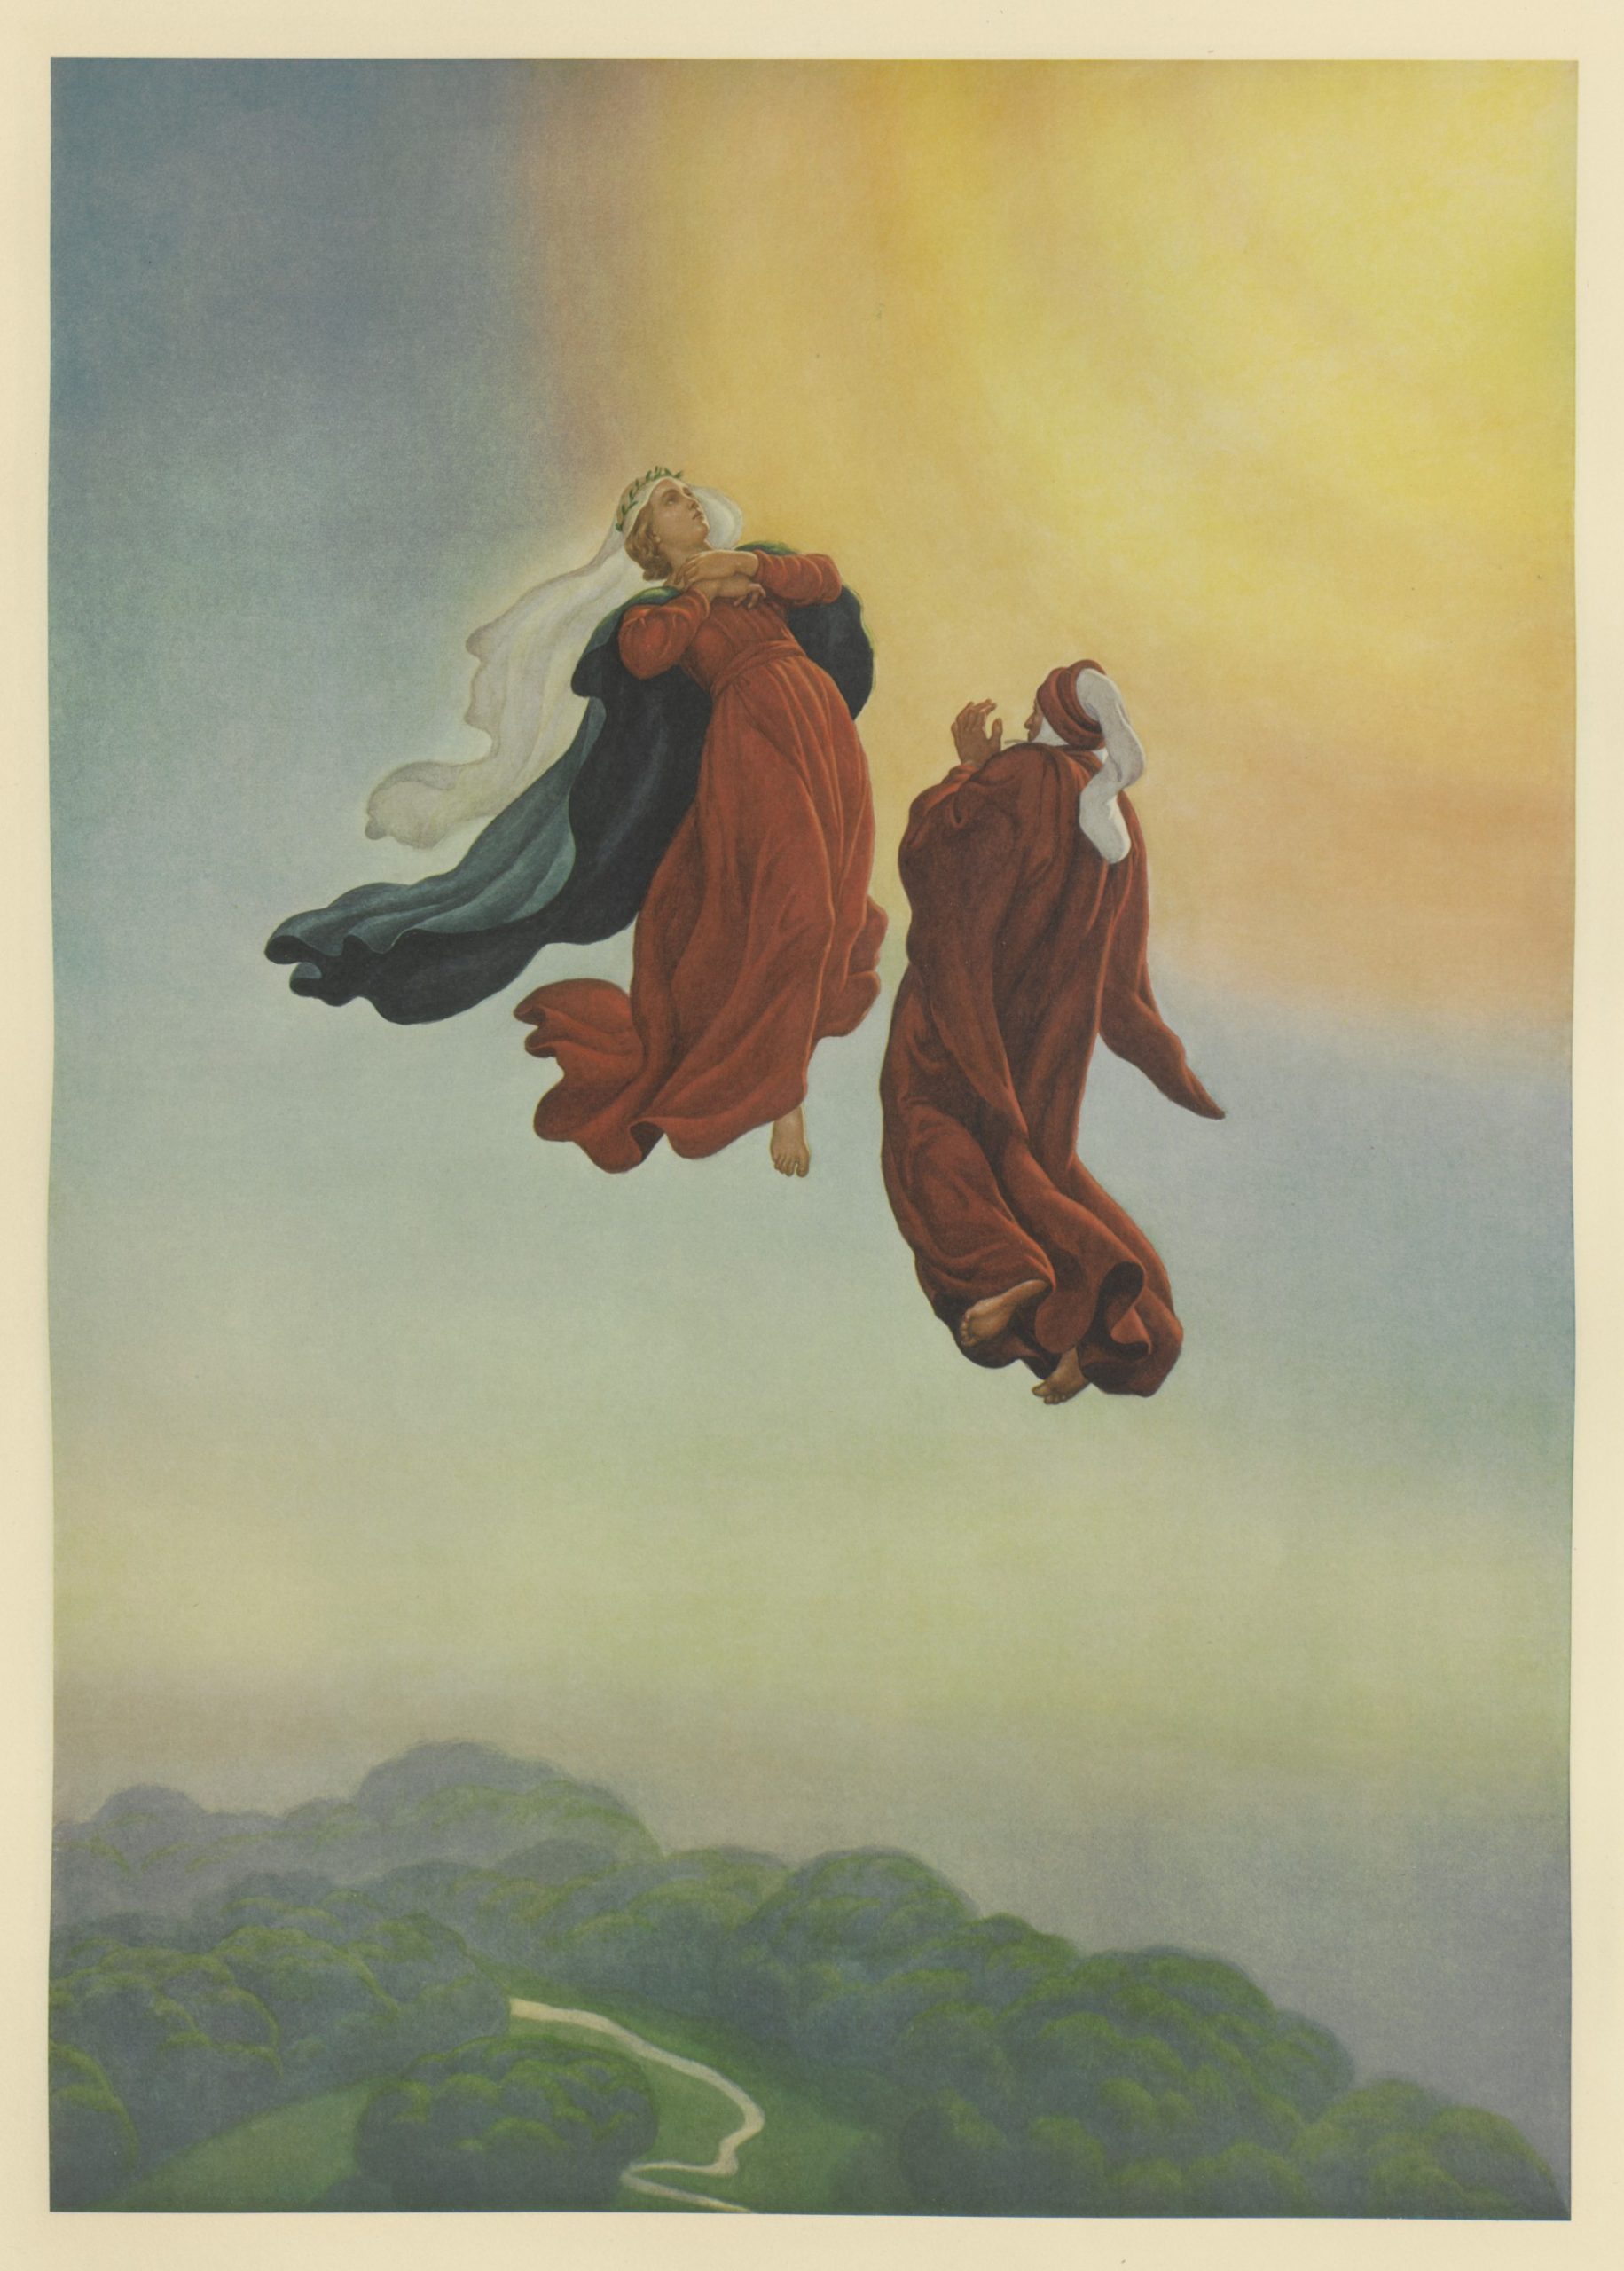 <p>Dante e Beatrice, Paradiso Canto I<br />
Illustrazione di Amos Nattini per la <em>Divina Commedia</em></p>
